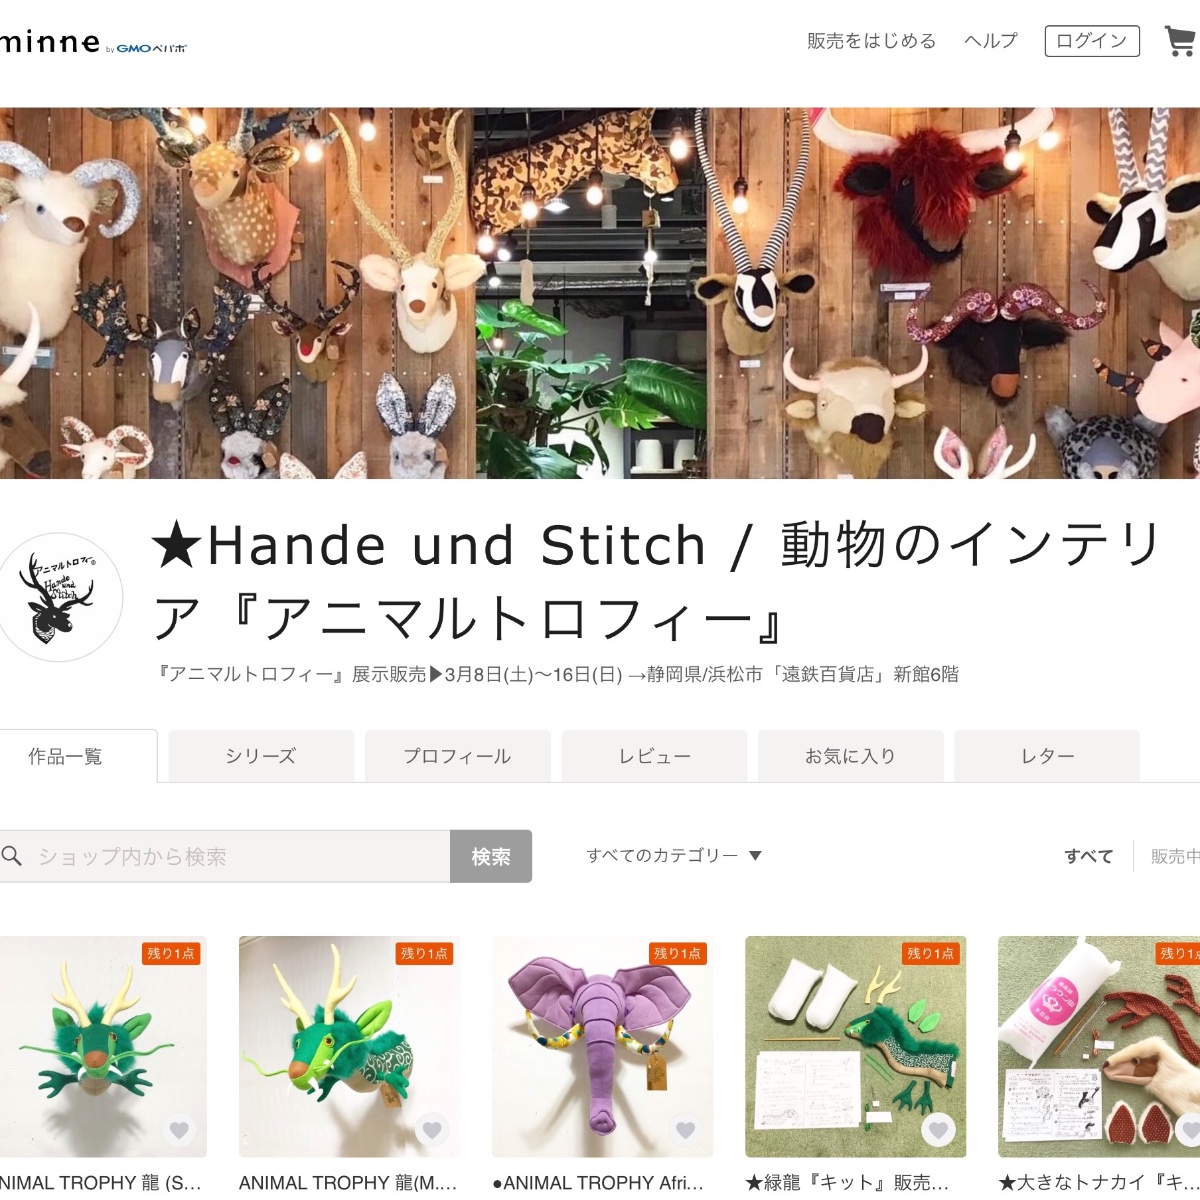 Hande und Stitch / ANIMAL TROPHY